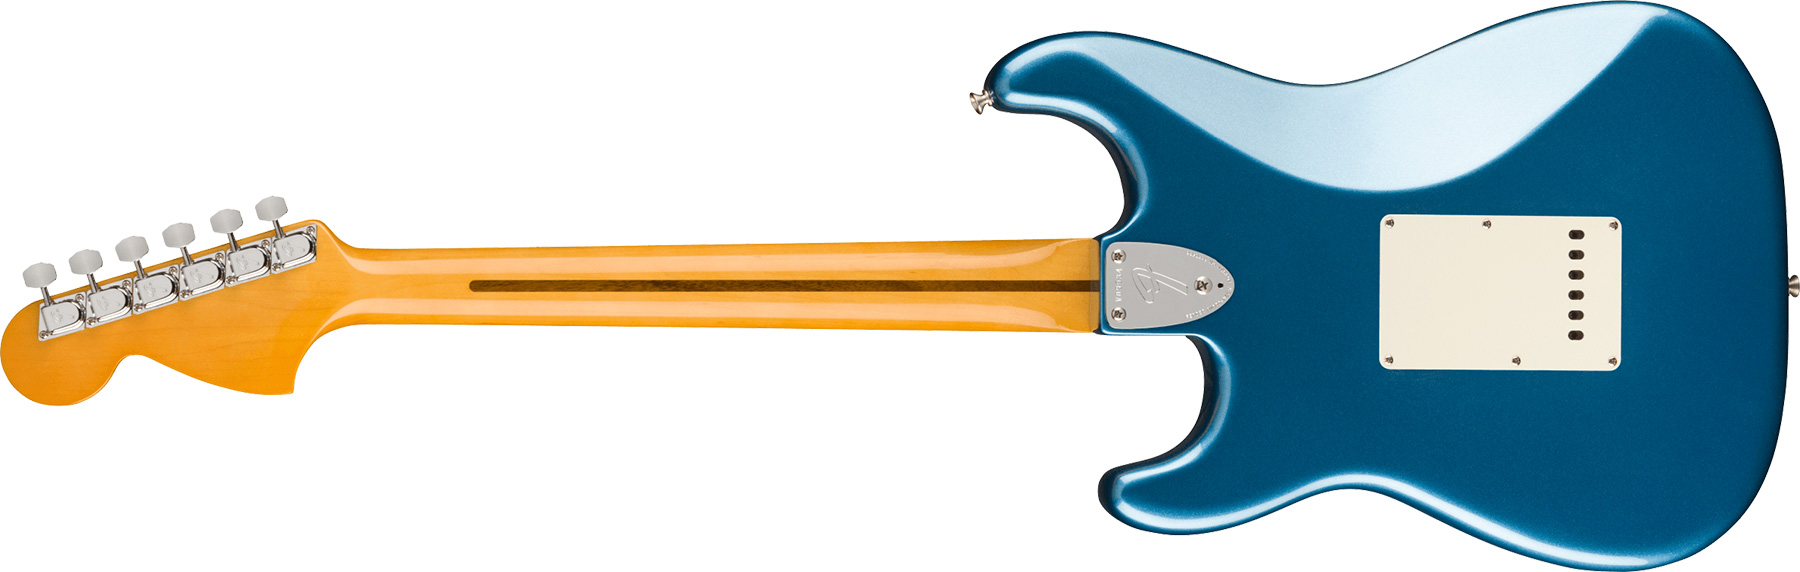 Fender Strat 1973 American Vintage Ii Usa 3s Trem Mn - Lake Placid Blue - Elektrische gitaar in Str-vorm - Variation 1